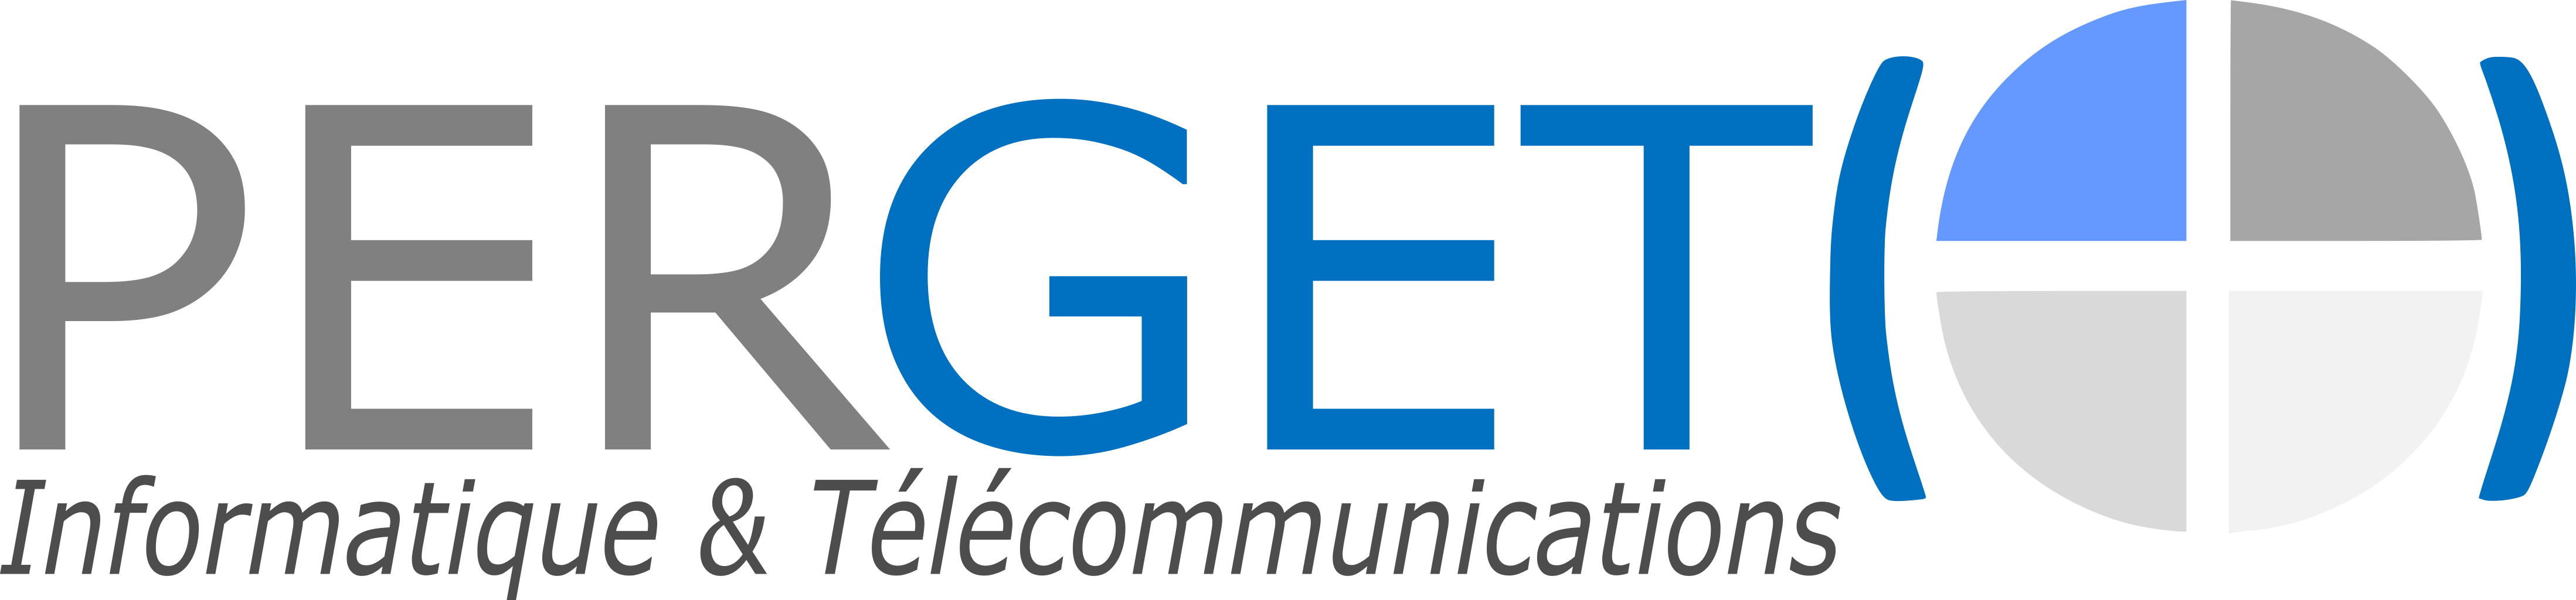 PERGET – Services externalisés en informatique et télécommunication